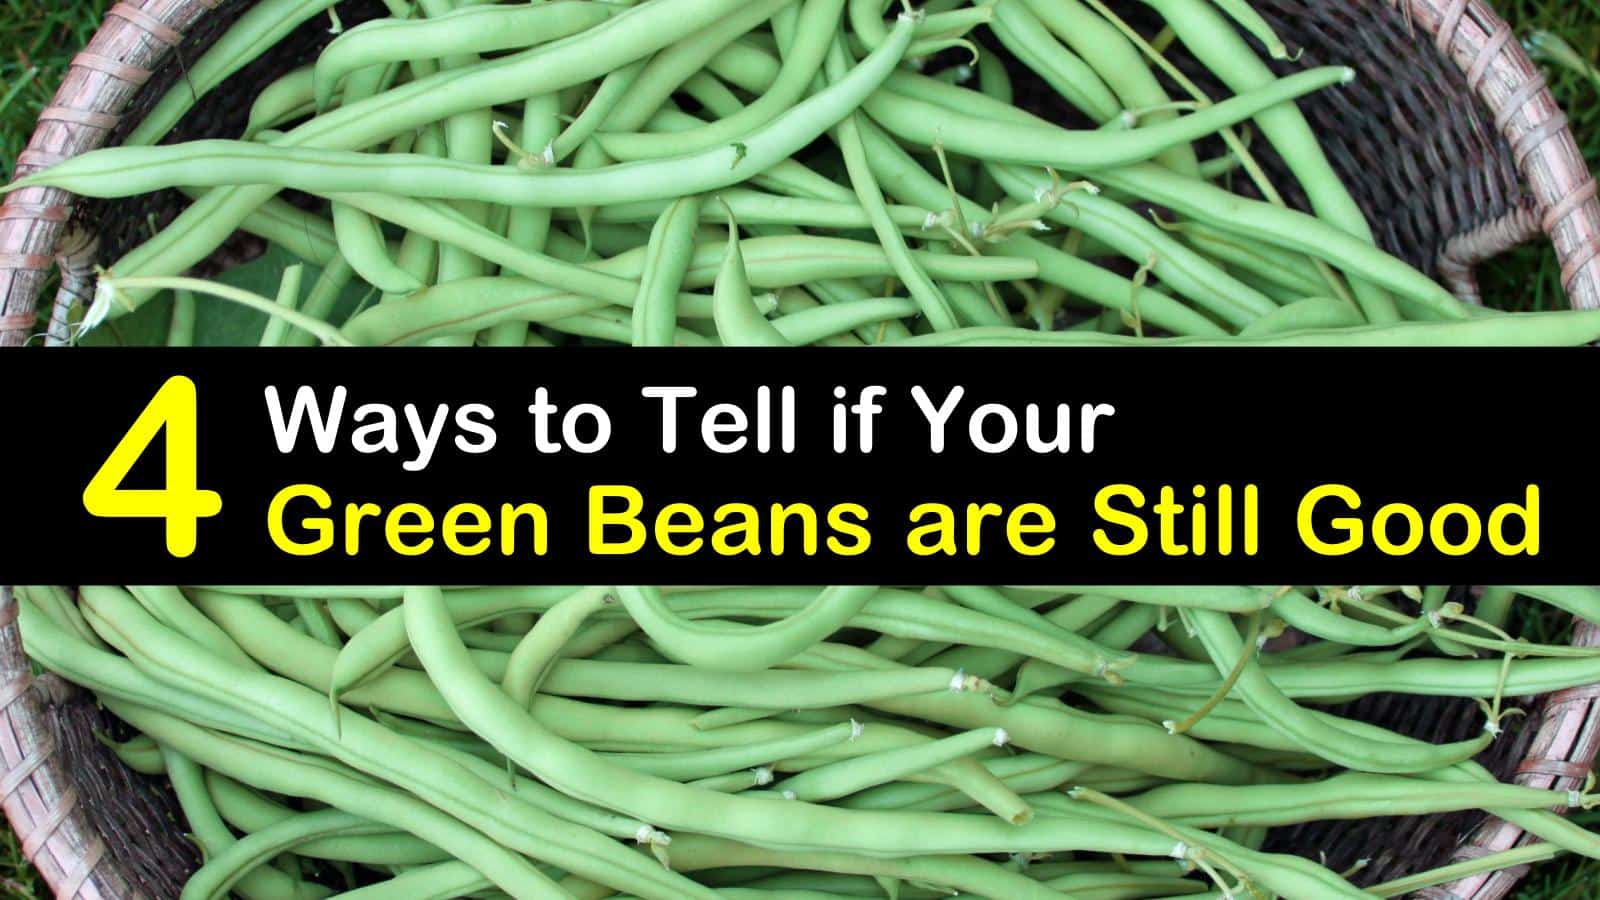 are green beabs goid fir your diet